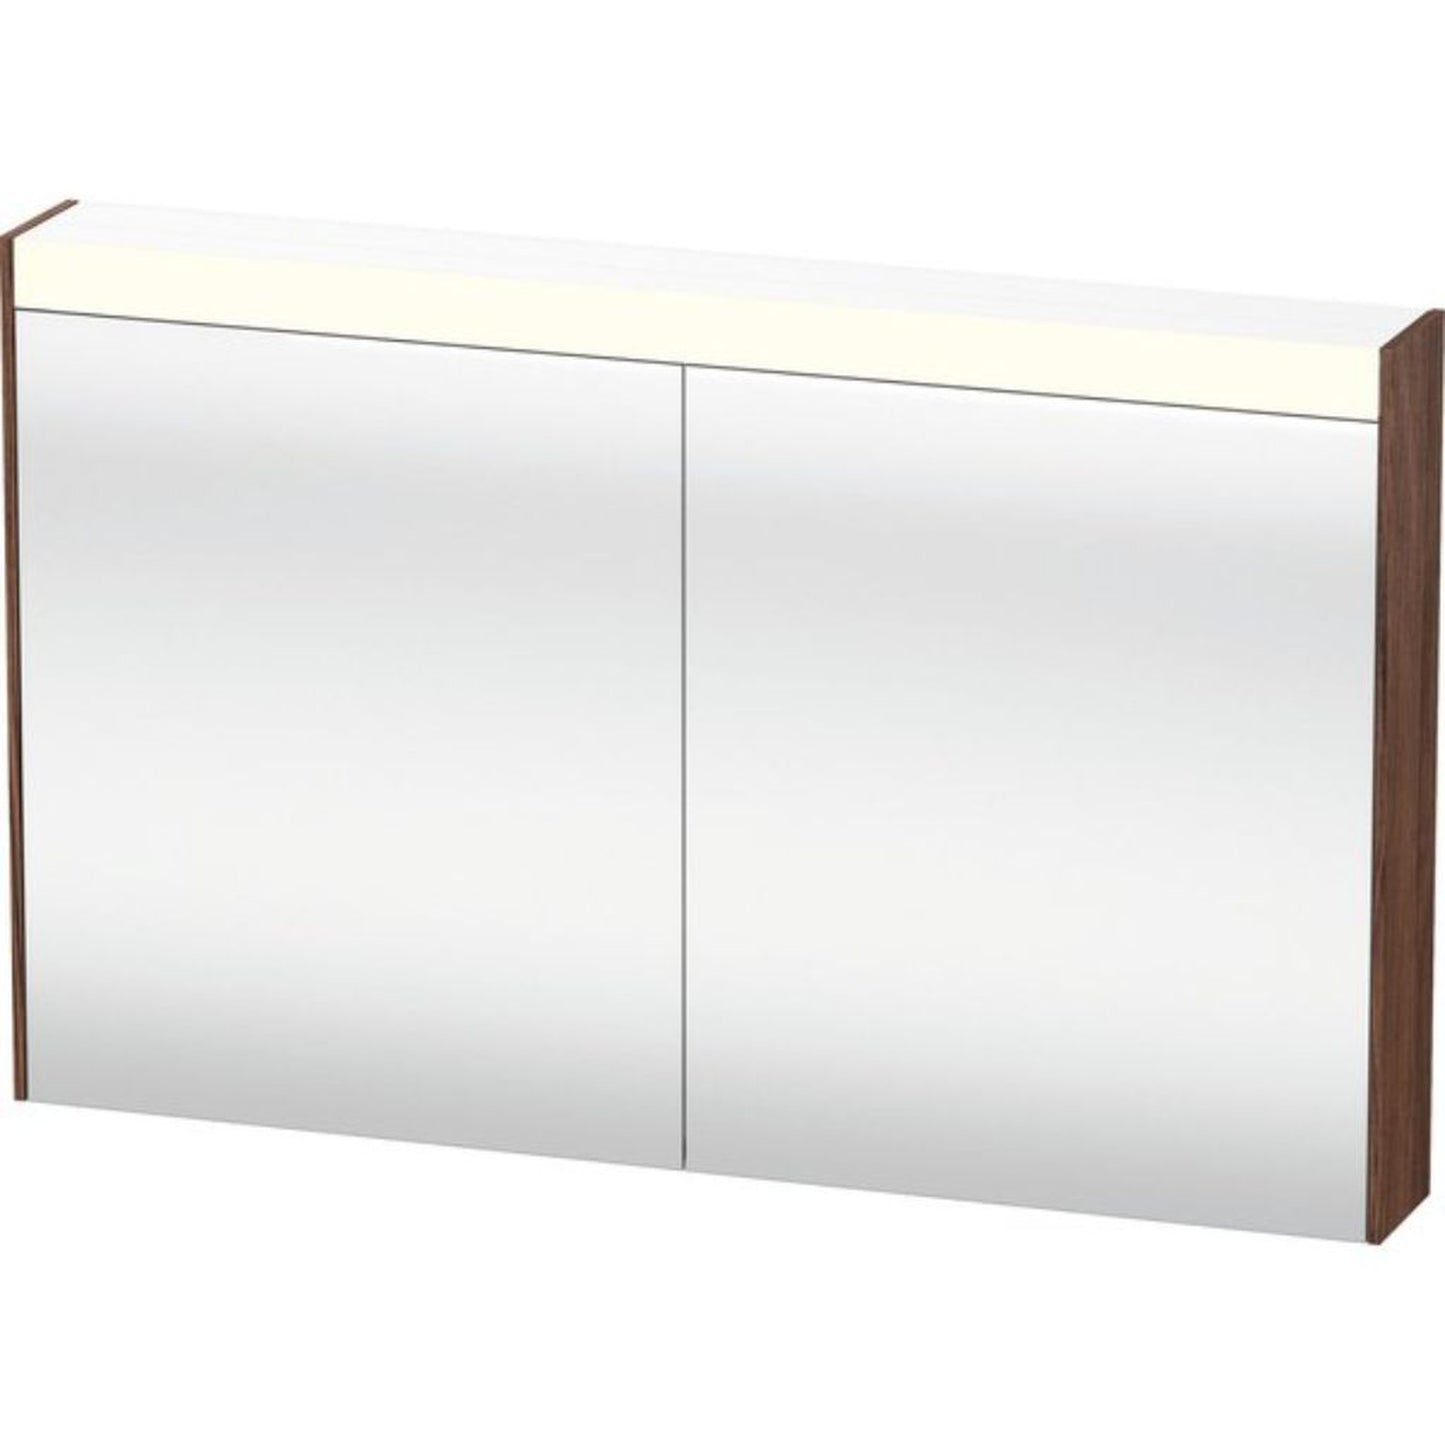 Duravit Brioso 48" x 30" x 6" Mirror Cabinet With Lighting Walnut Dark